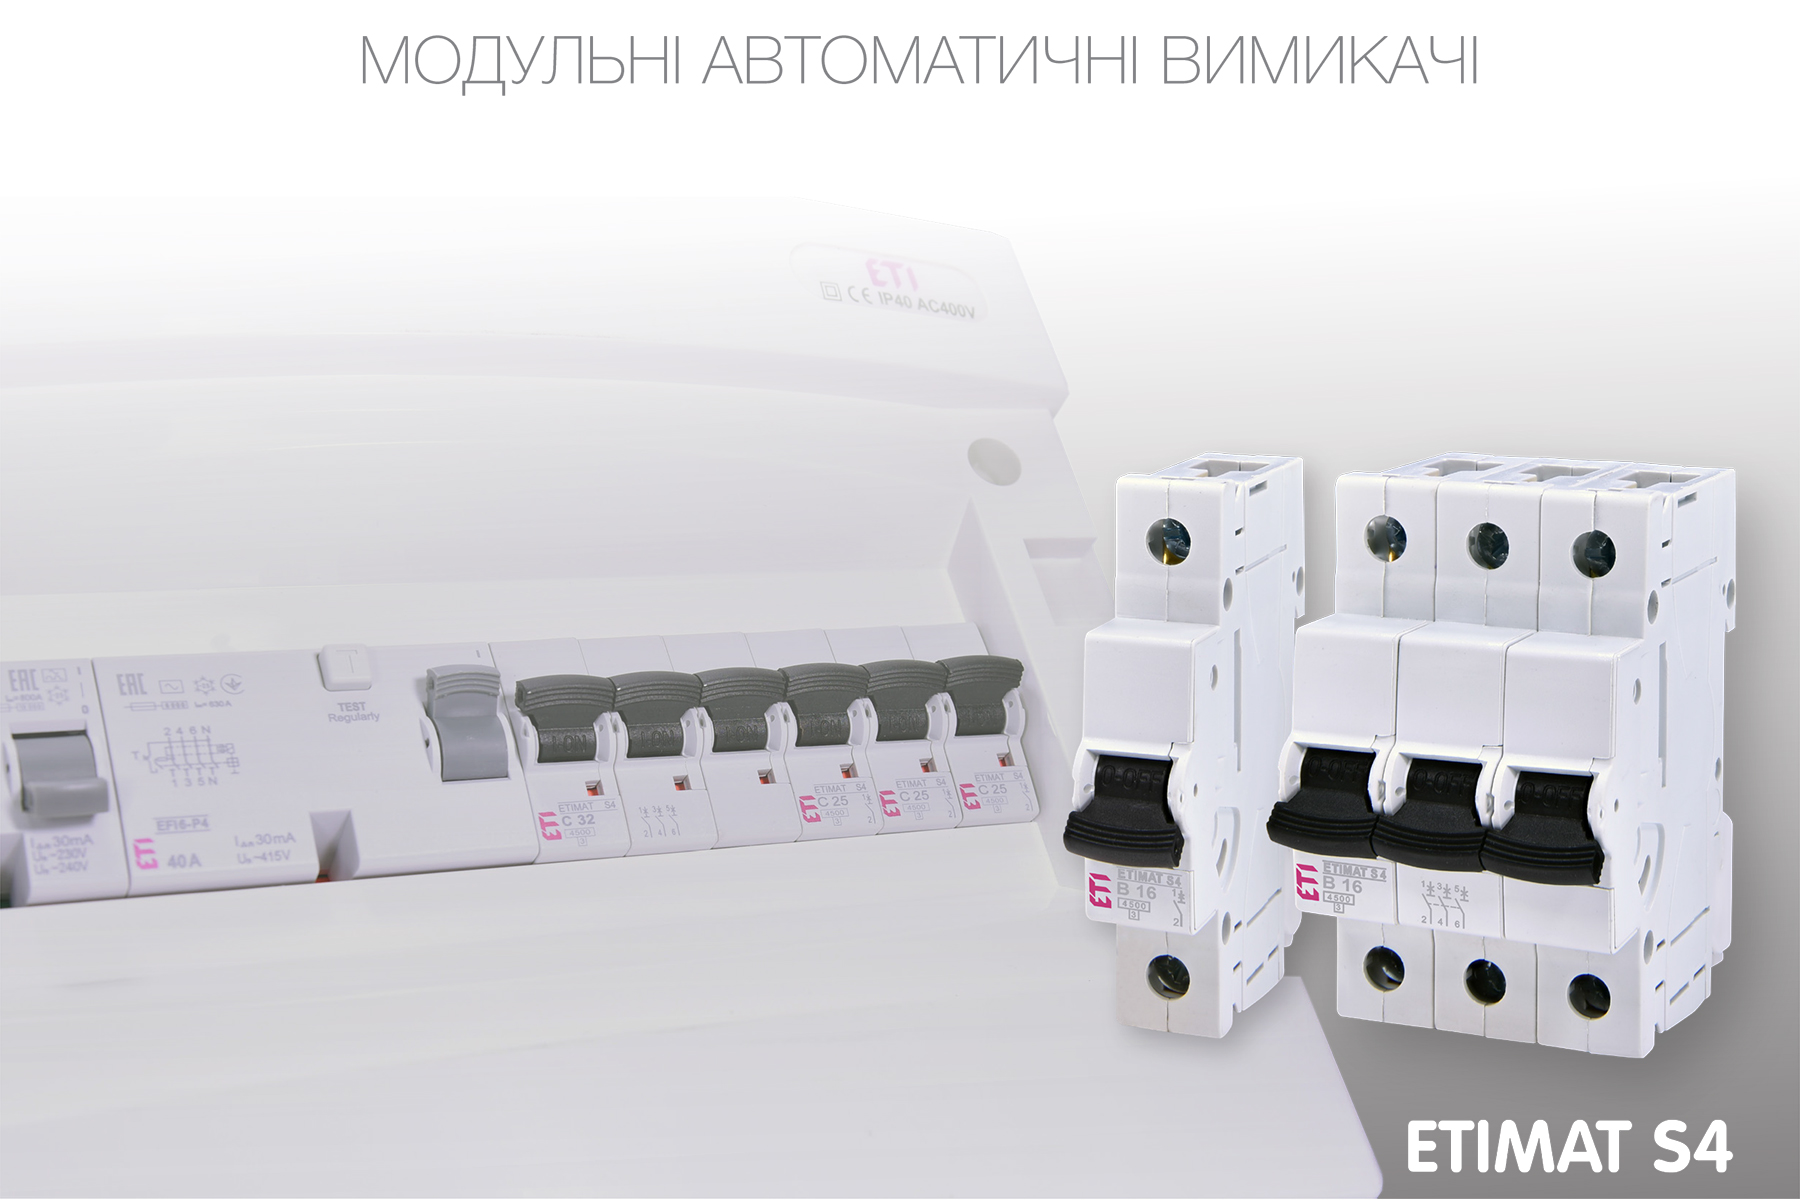 Нова серія модульних автоматичних вимикачів ETIMAT S4